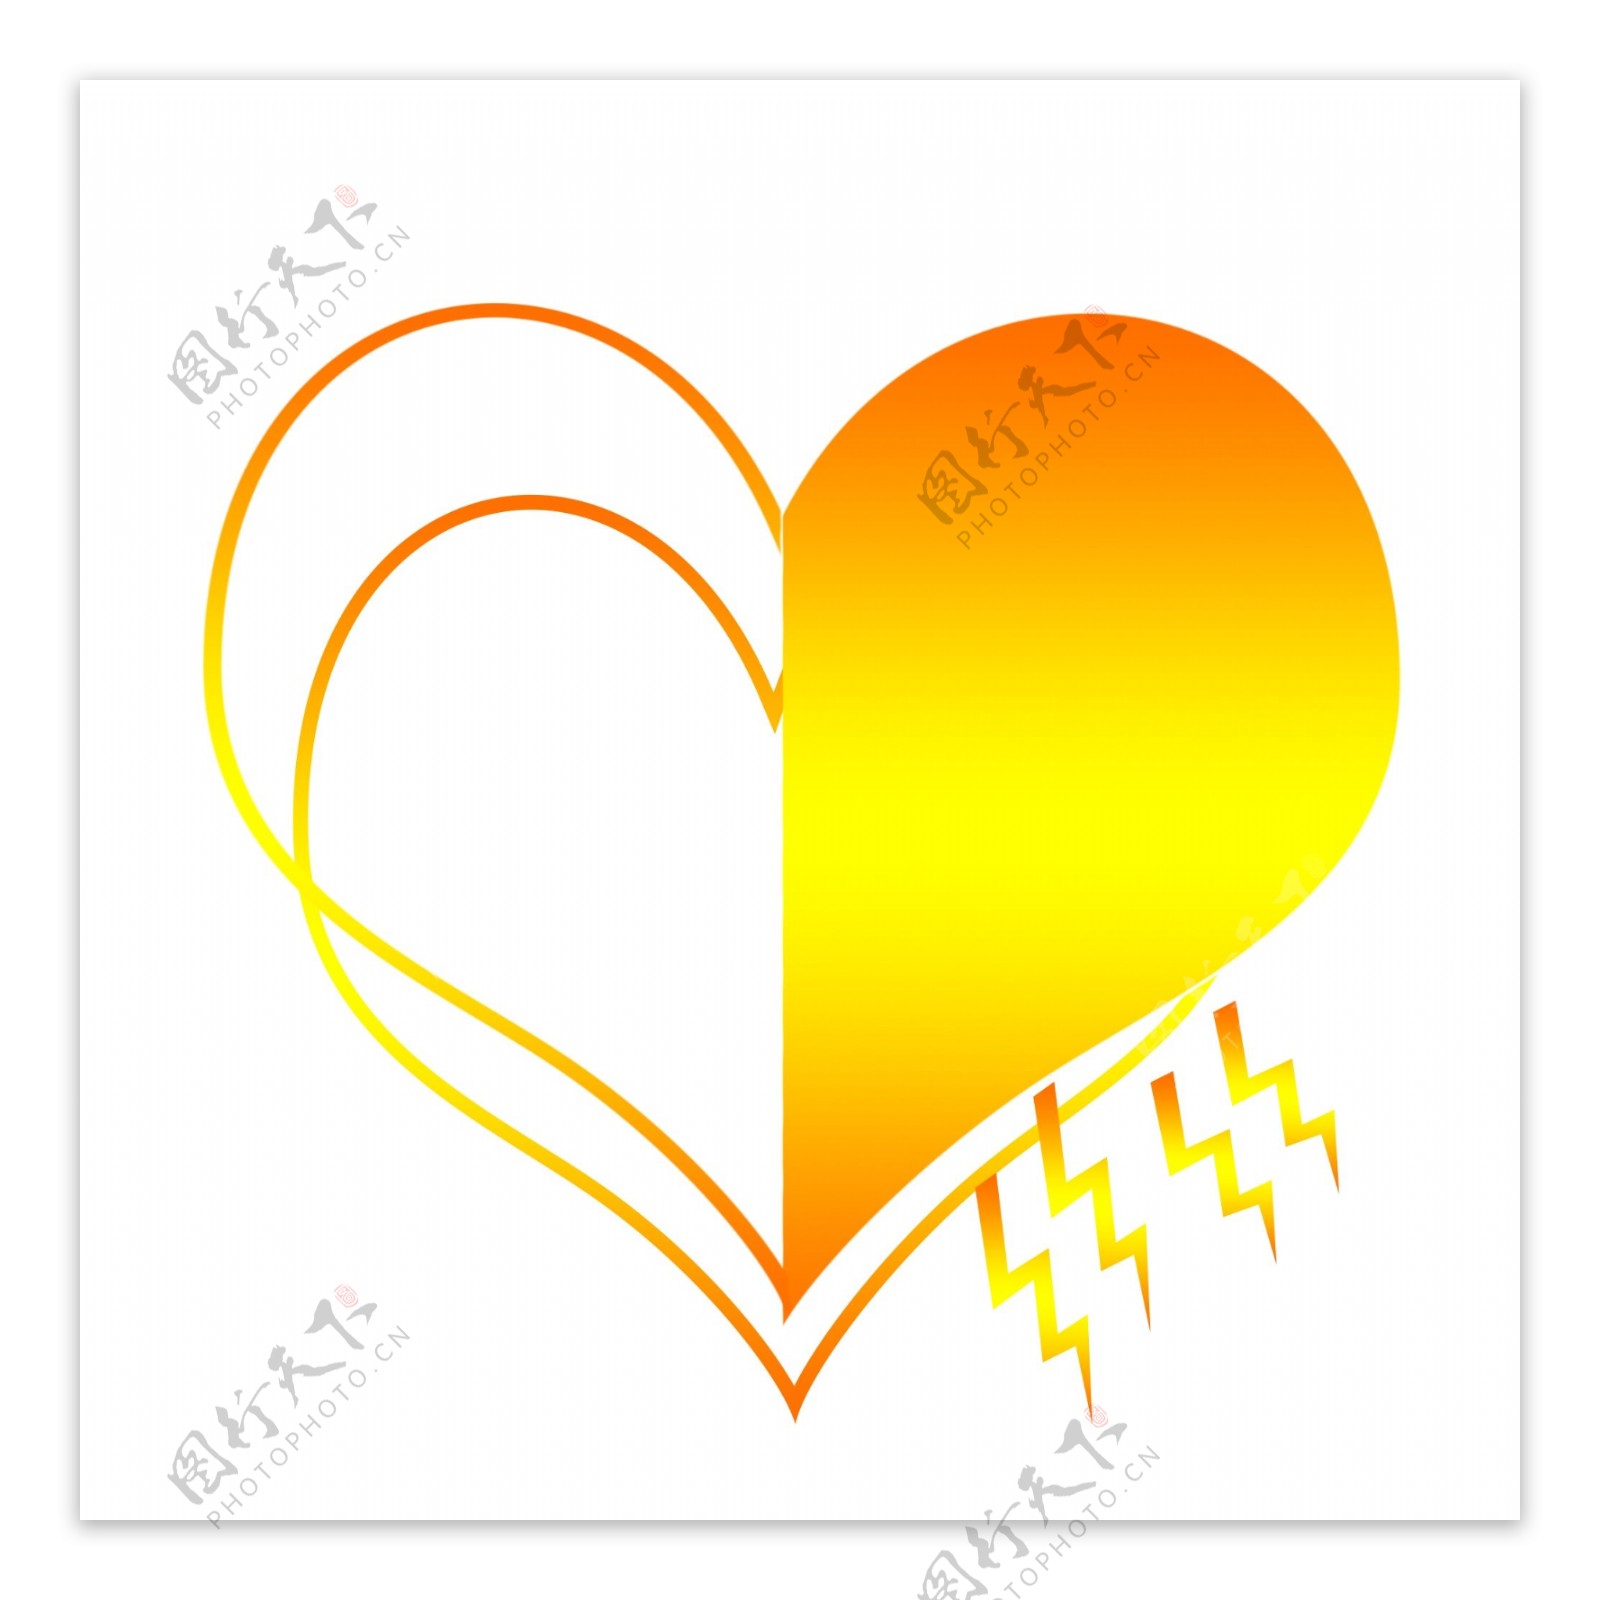 纹理渐变橙黄色心形卡通装饰边框可商用